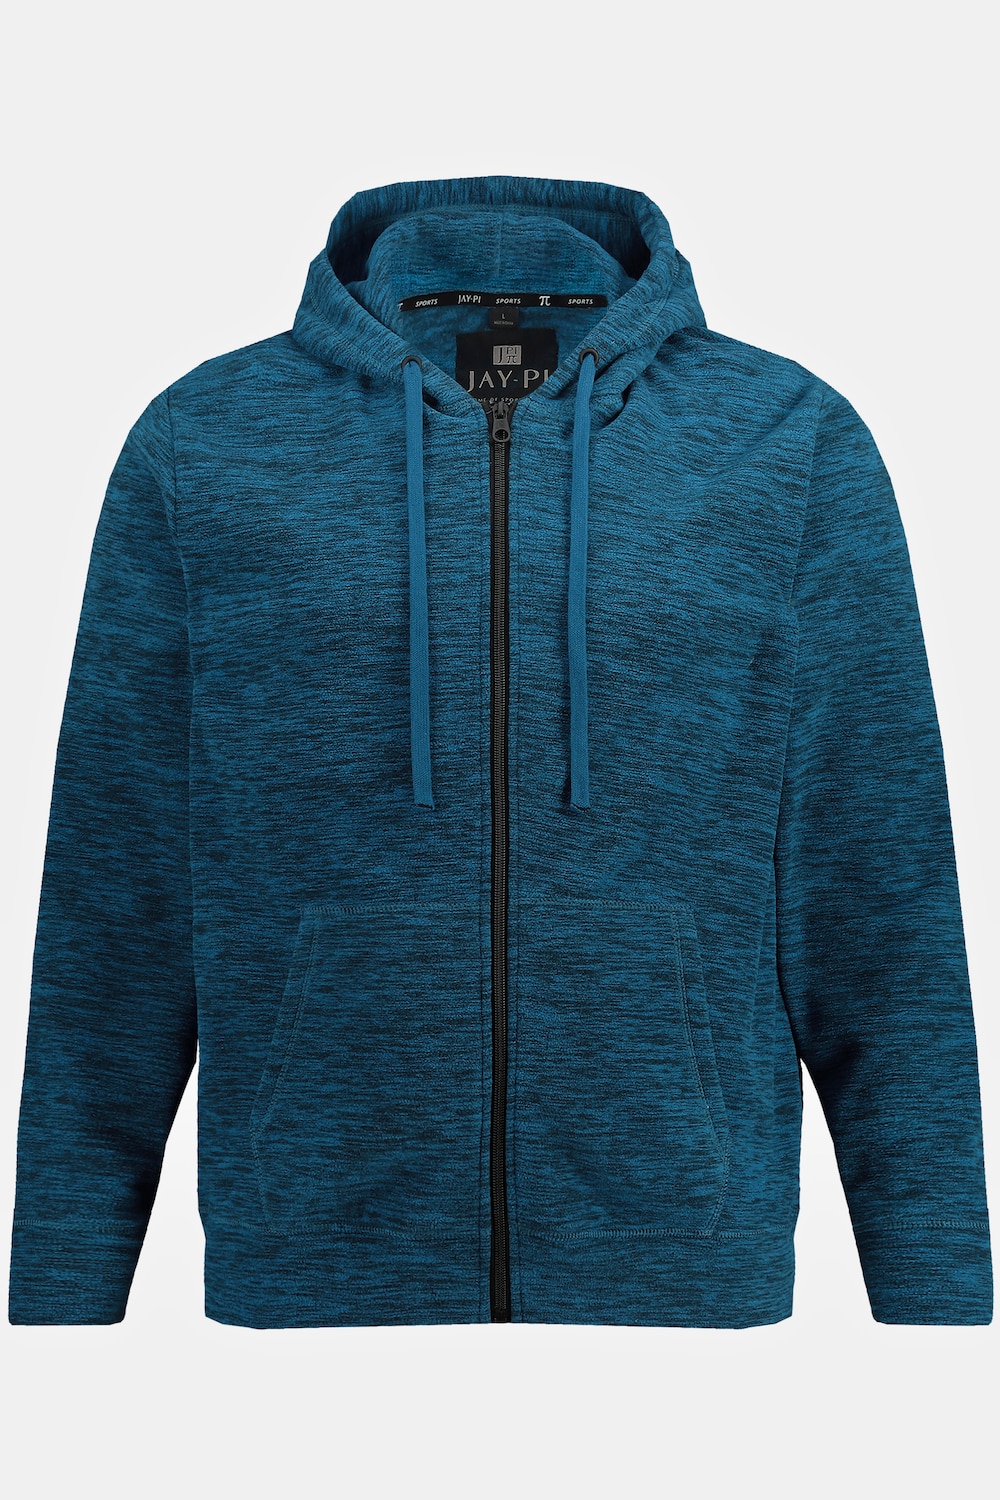 Grote Maten JAY-PI gebreid fleece hoodie-jackmale, blauw, Maat: XXL, Polyester, JAY-PI